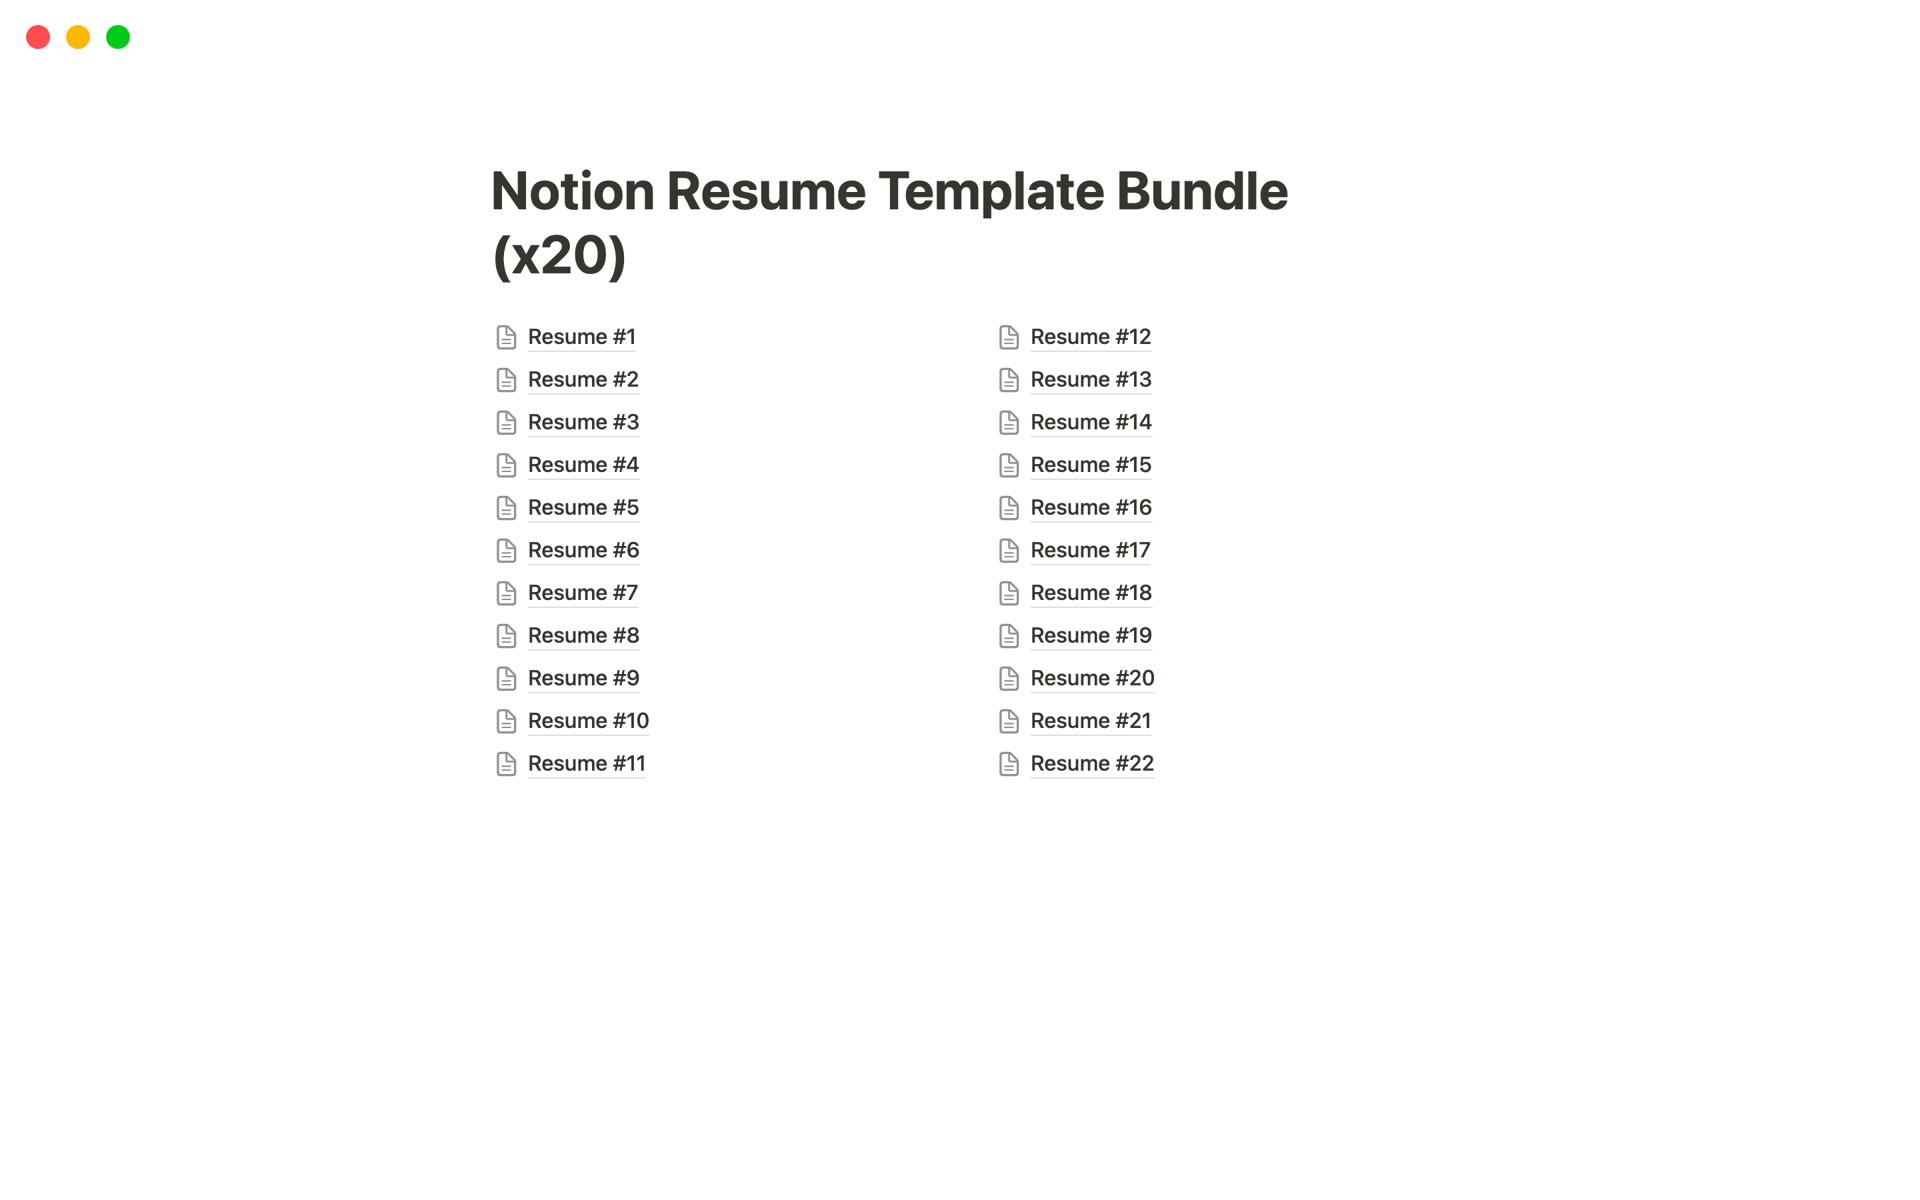 Uma prévia do modelo para Notion Resume Bundle (x20)